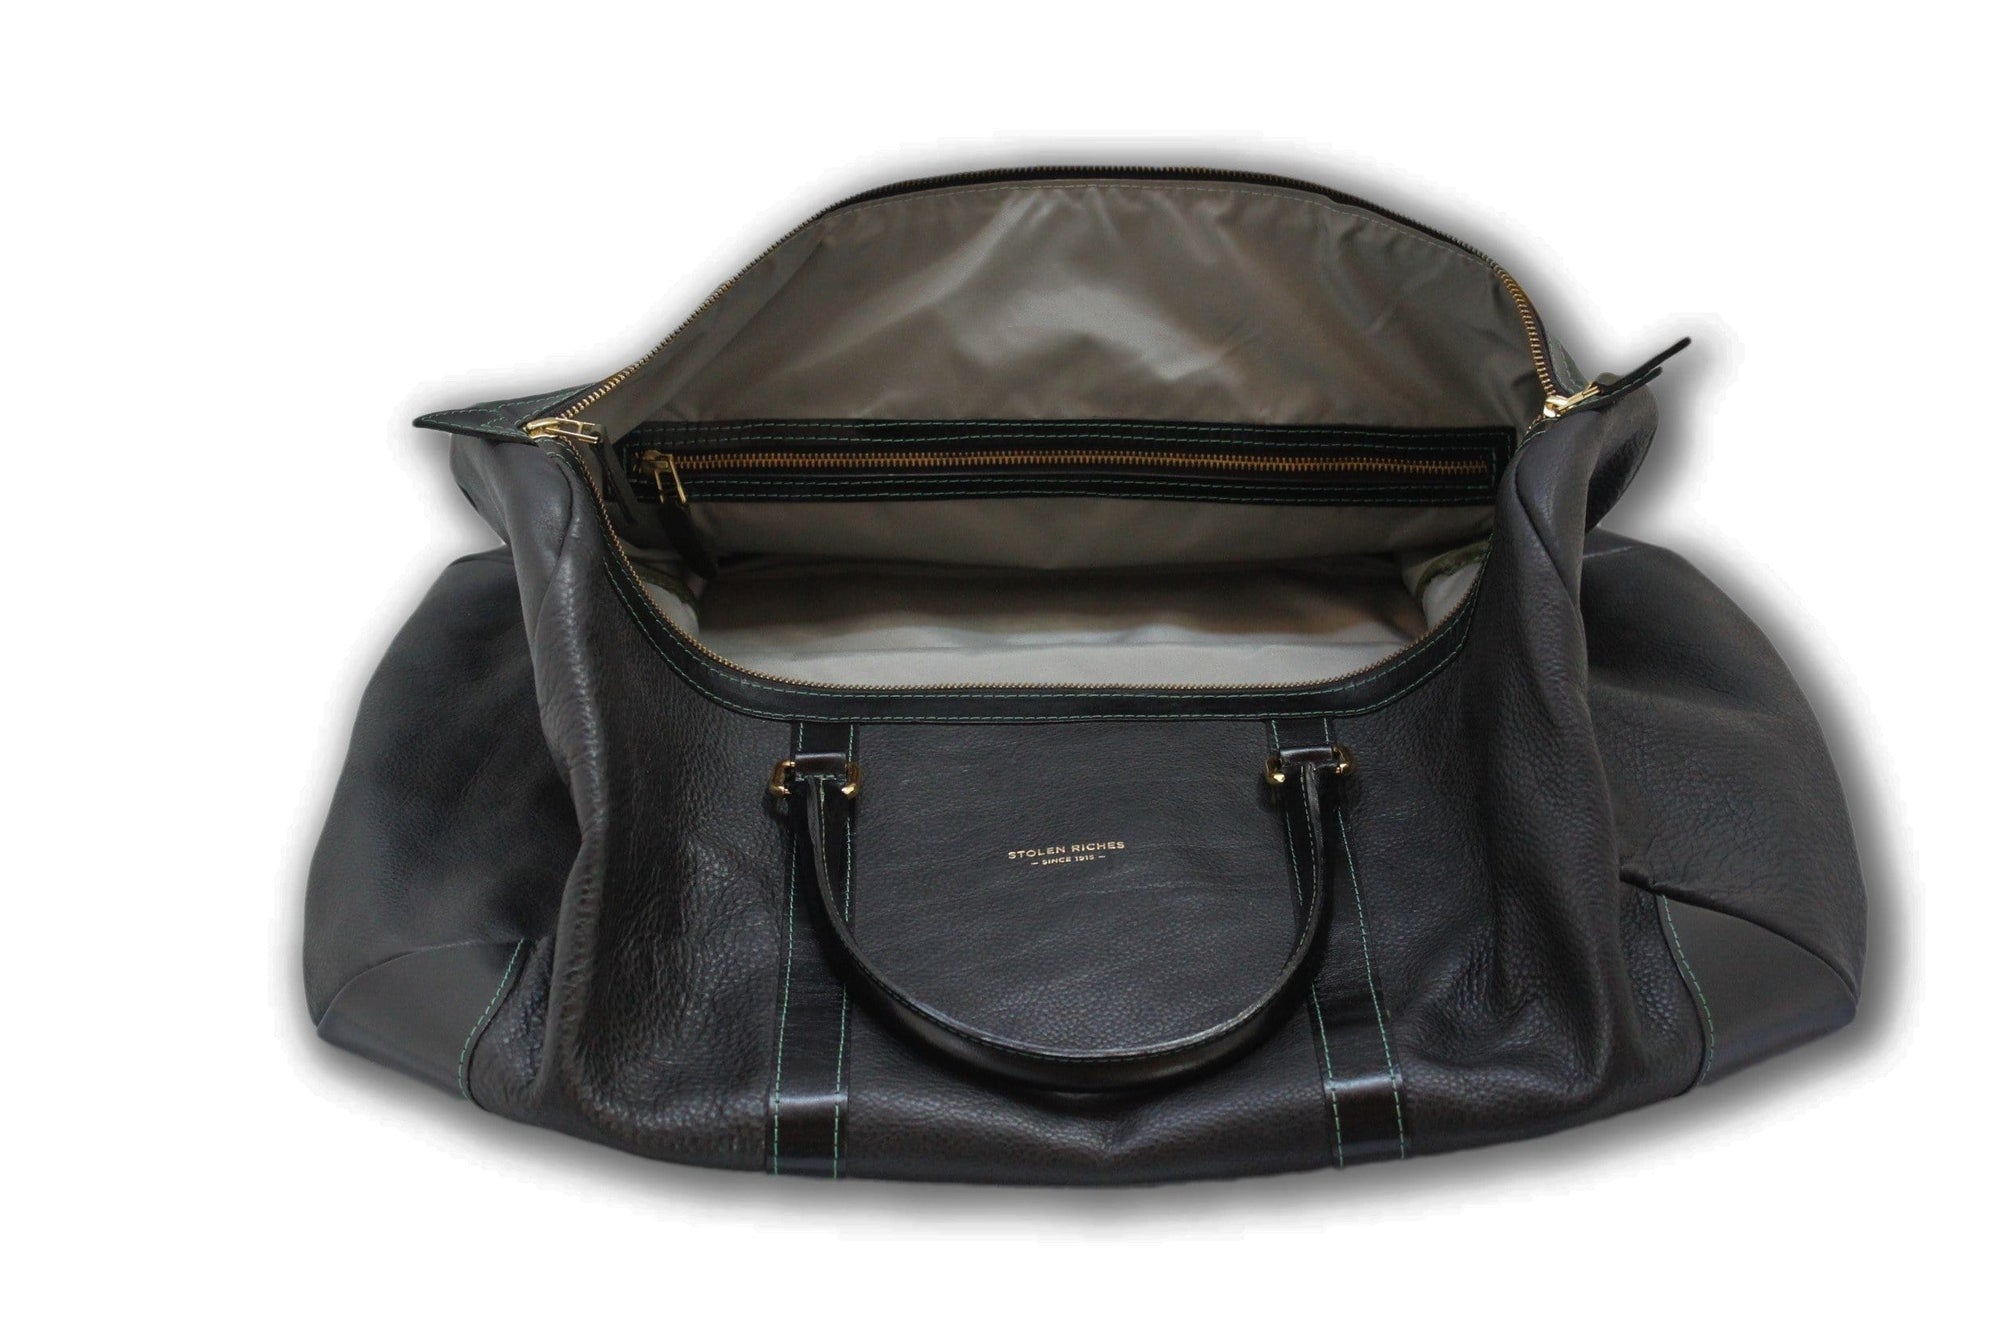 Weekend bag, black leather